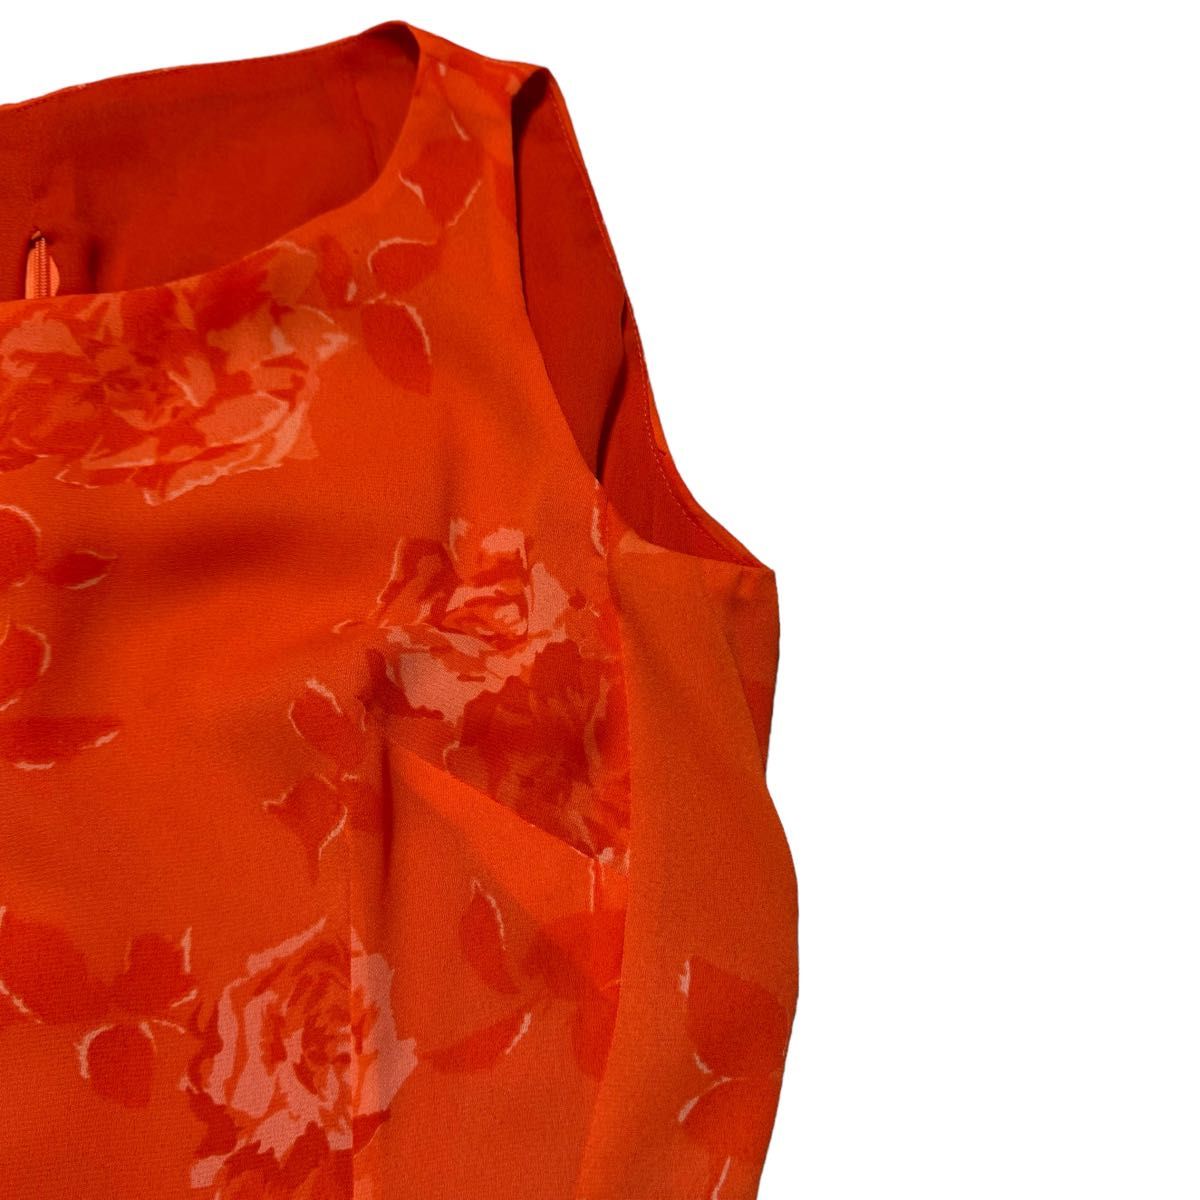 【イタリア製】mimmina ミンミーナ ノースリーブ ワンピース サイズ42 M相当 オレンジ 総柄 バラ柄 花柄 ポリエステル